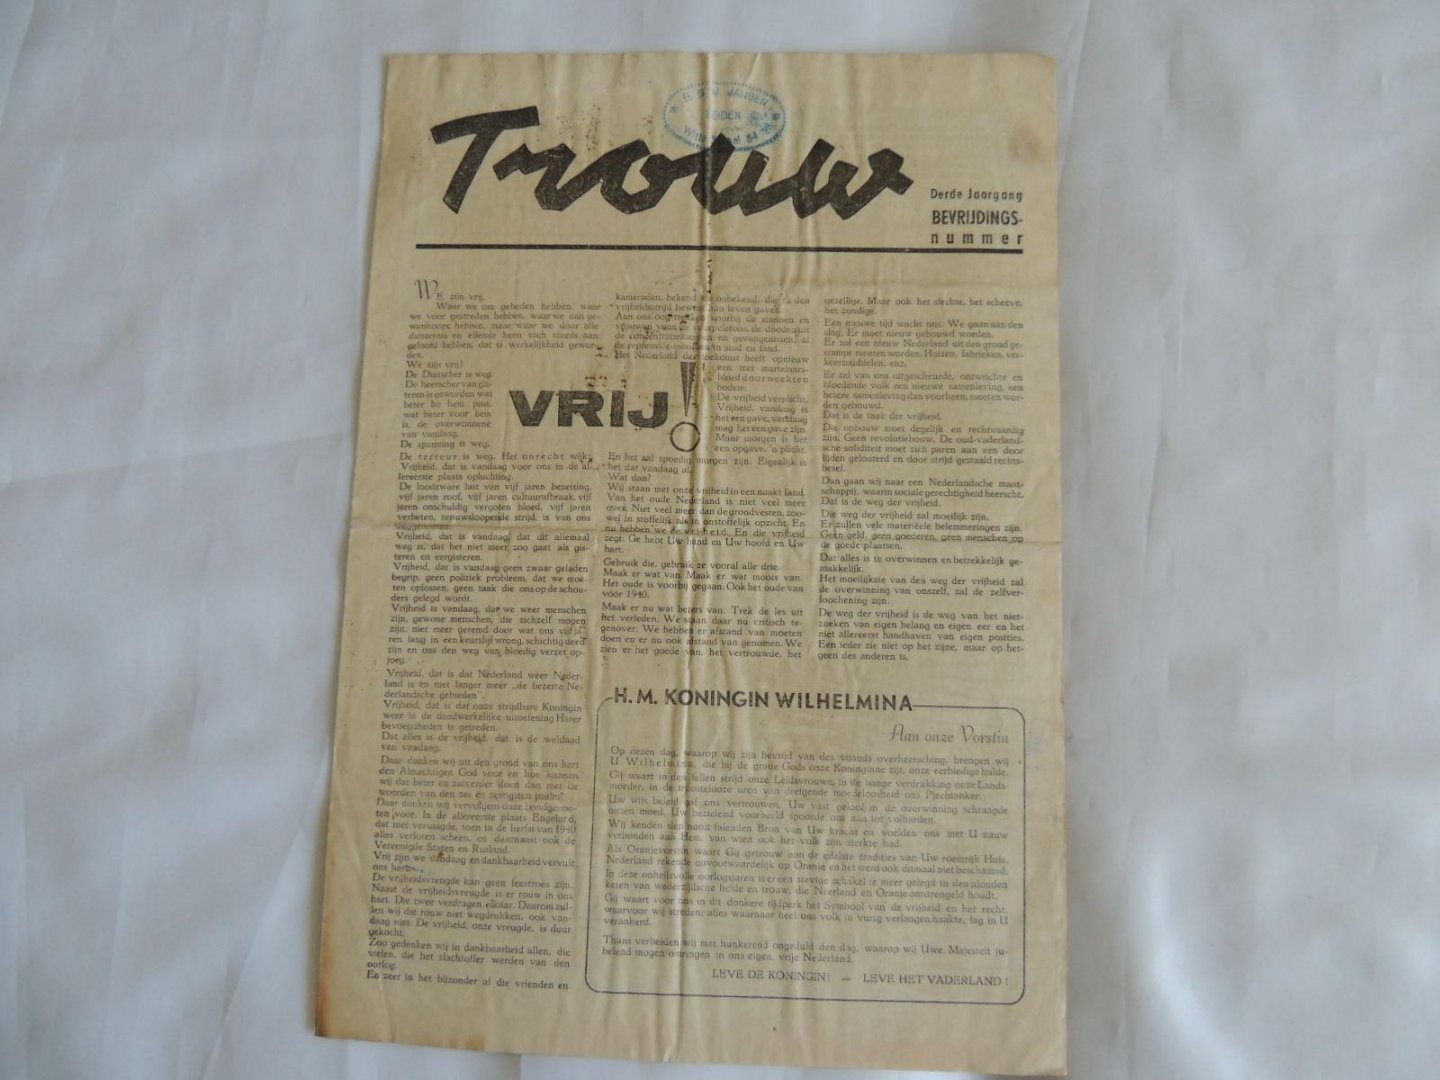  - Krant "Trouw", 3e Jaargang, mei 1945 - Bevrijdingsnummer met o.a. art. onder de kop VRIJ!, Radicale zuivering en Hard en Pricipiëel